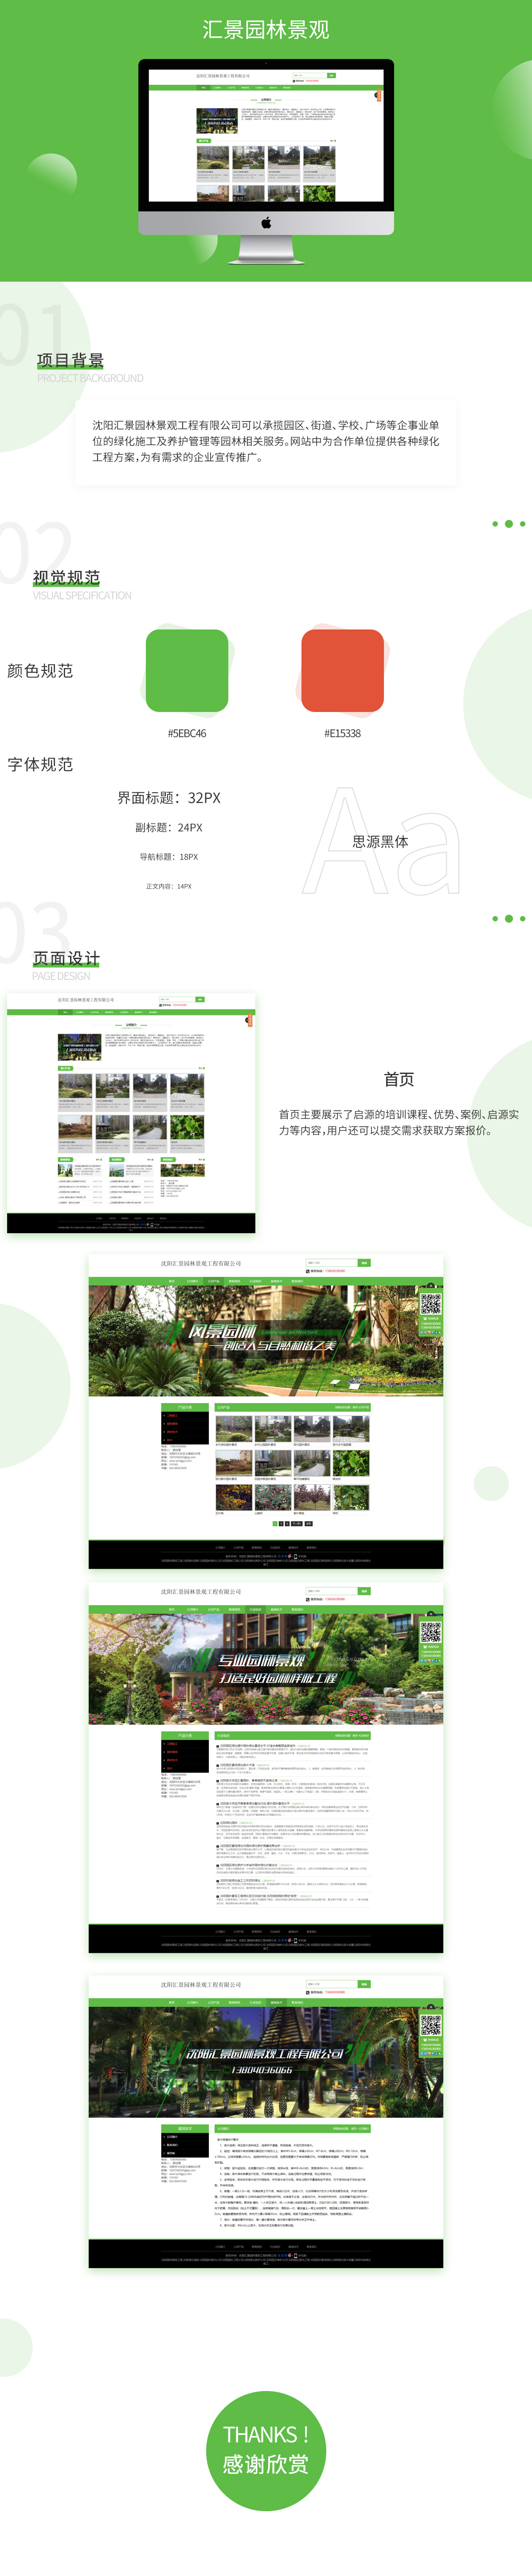 沈阳汇景园林景观工程有限公司网站